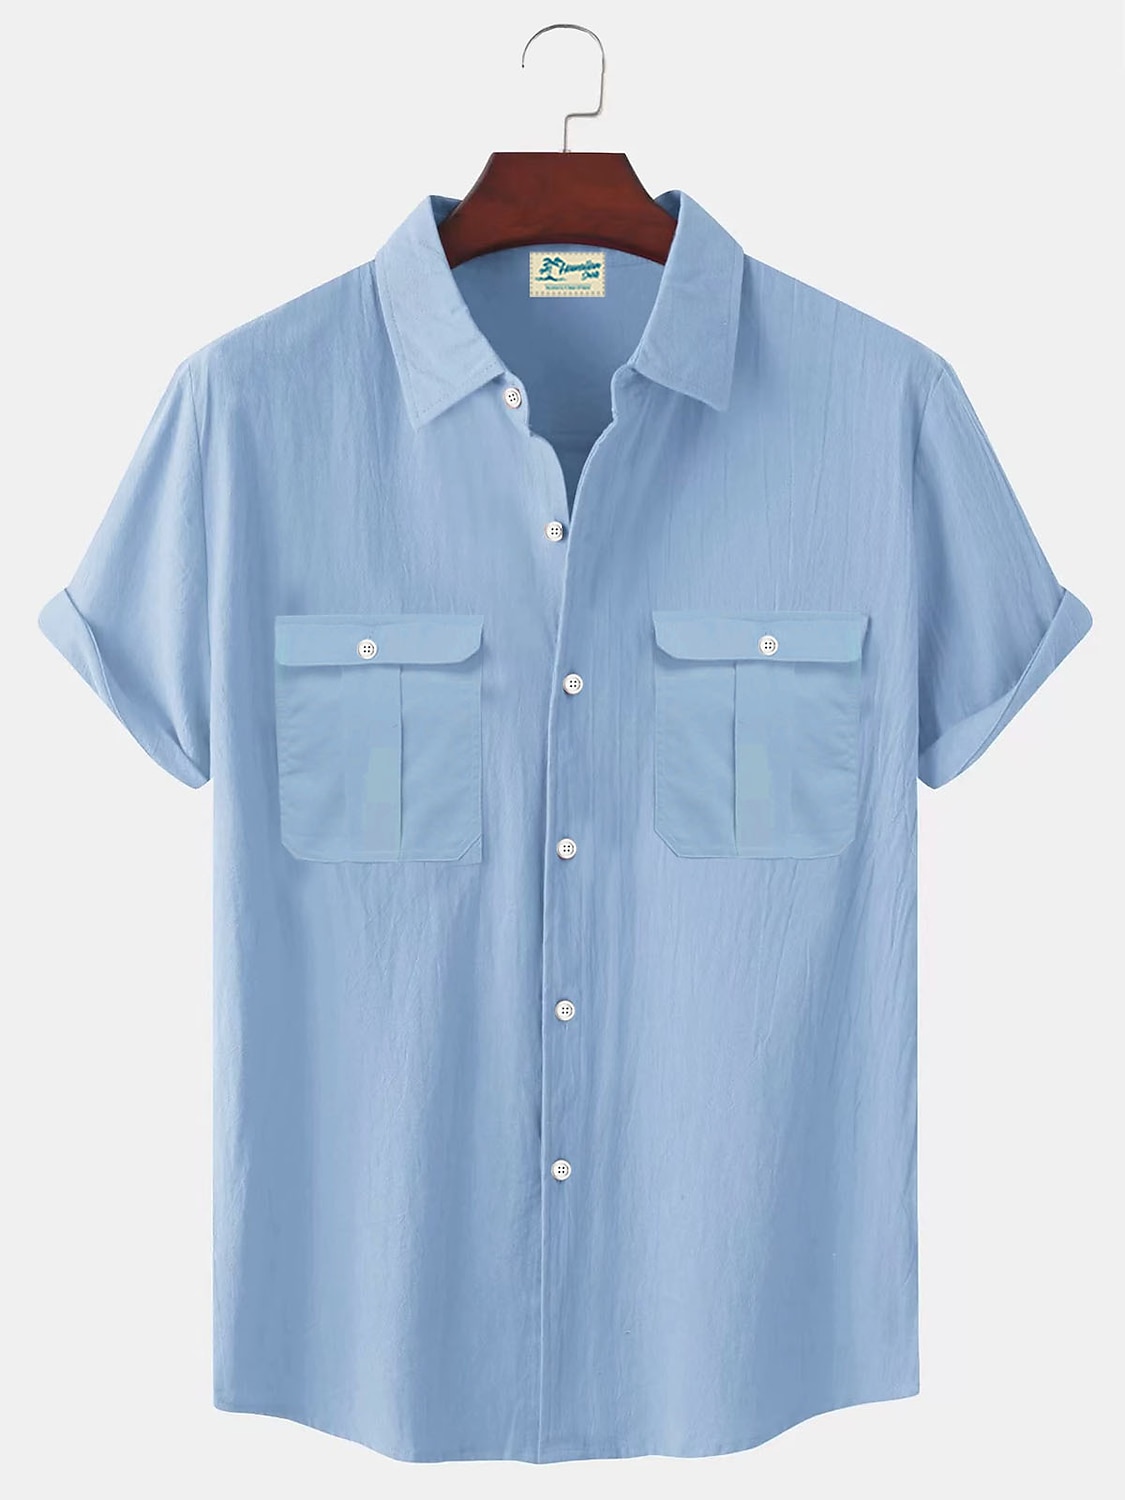 Men's Shirt Linen Shirt Summer Shirt Beach Shirt White Blue Brown Short Sleeve Solid Color Turndown Summer Outdoor Street Clothing Apparel Button-Down